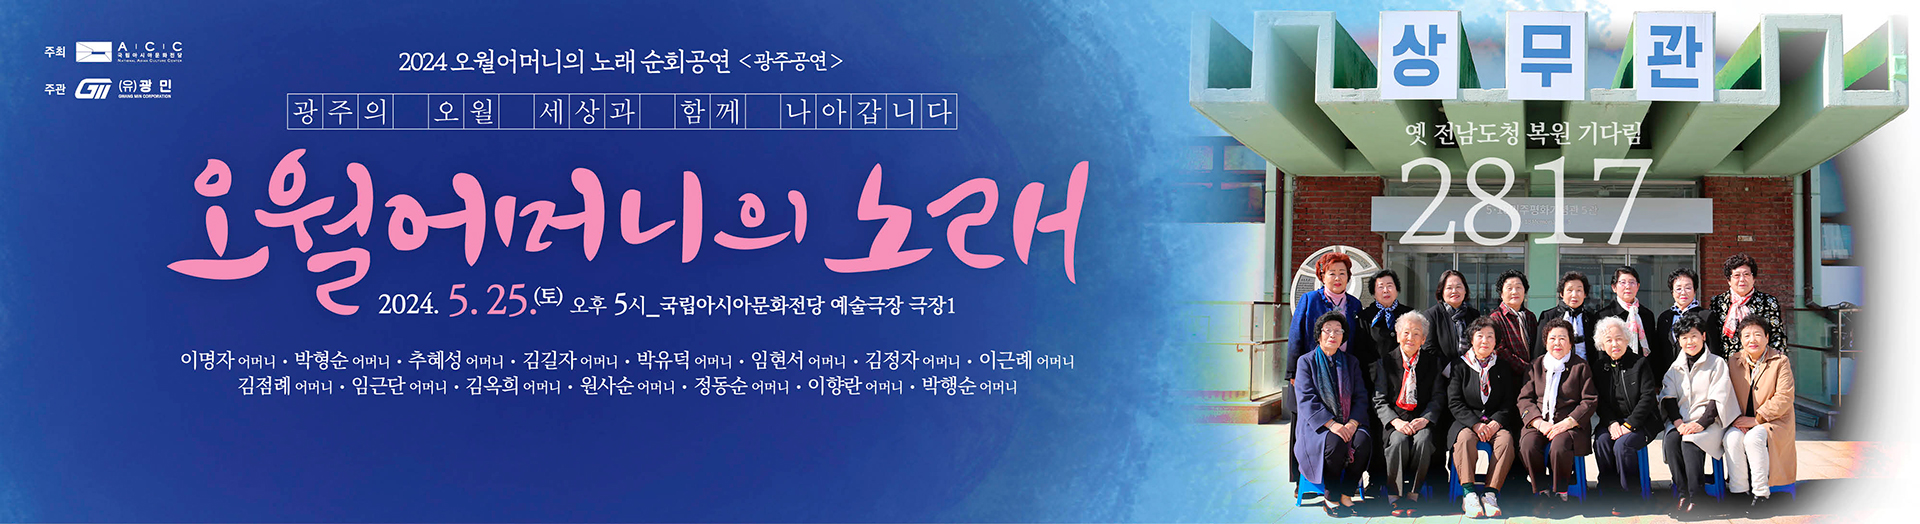 Tournée des Chansons des mères de mai 2024 « Concert de Gwangju »